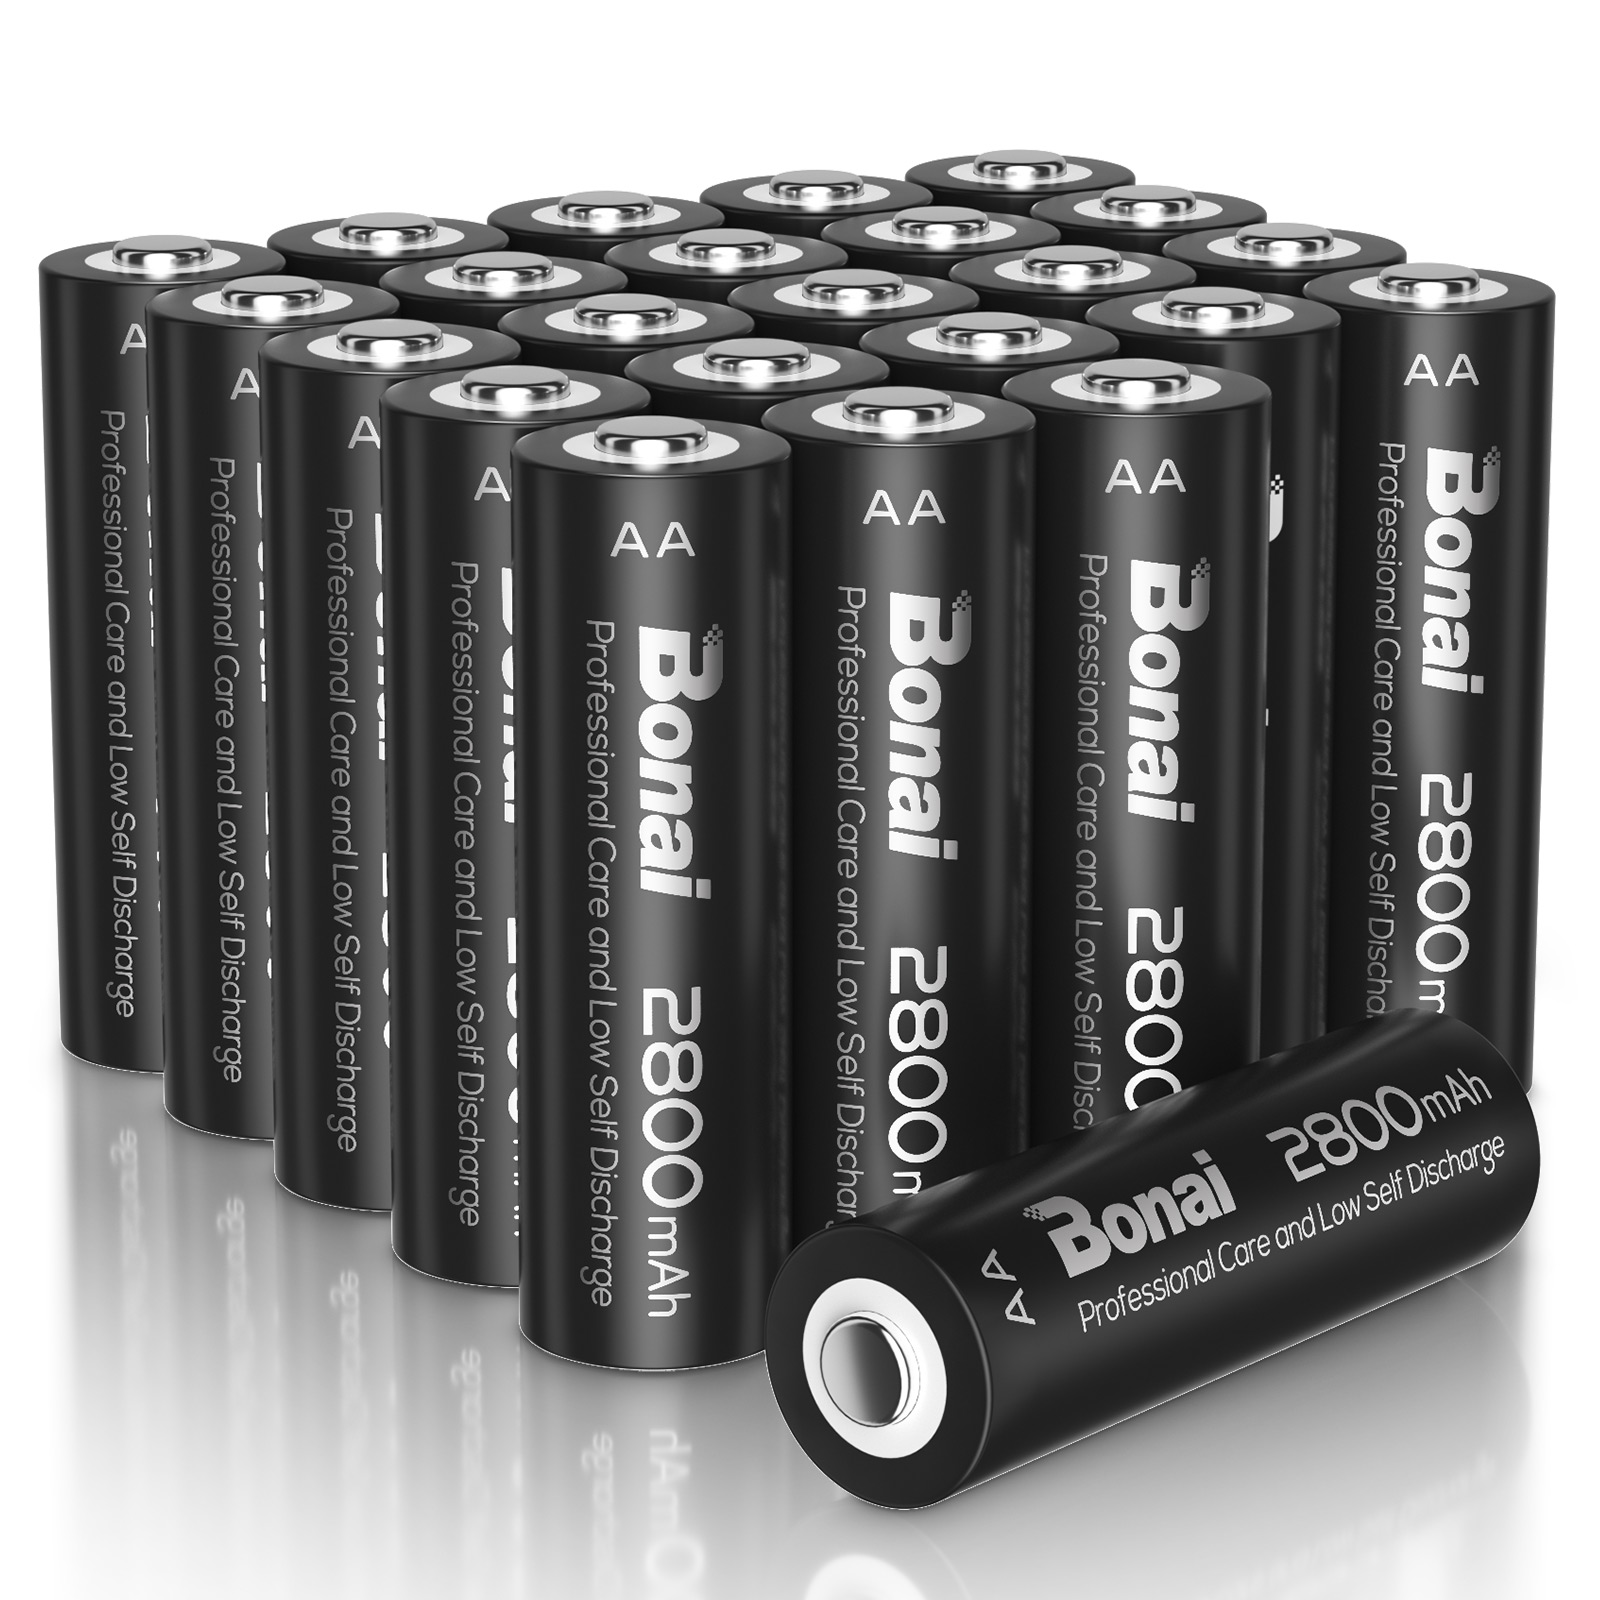 BONAI AA Rechargeable Batteries 2800mAh 1.2V Ni-MH Battery